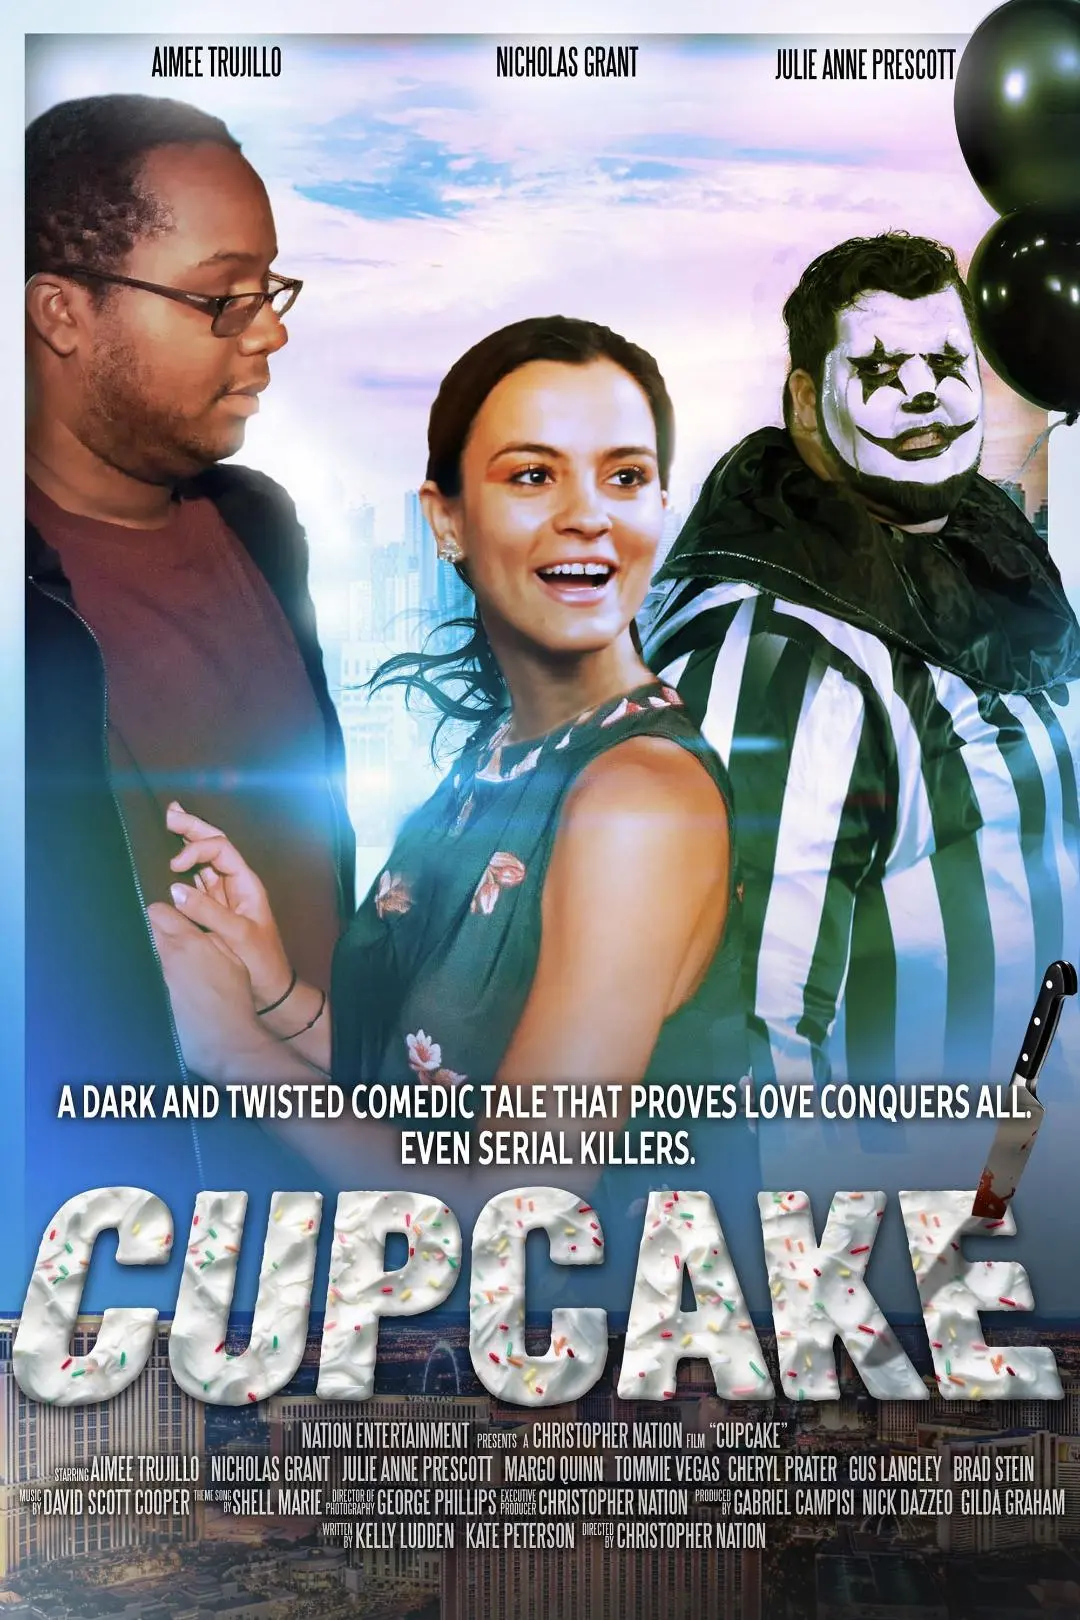 Cupcake_peliplat